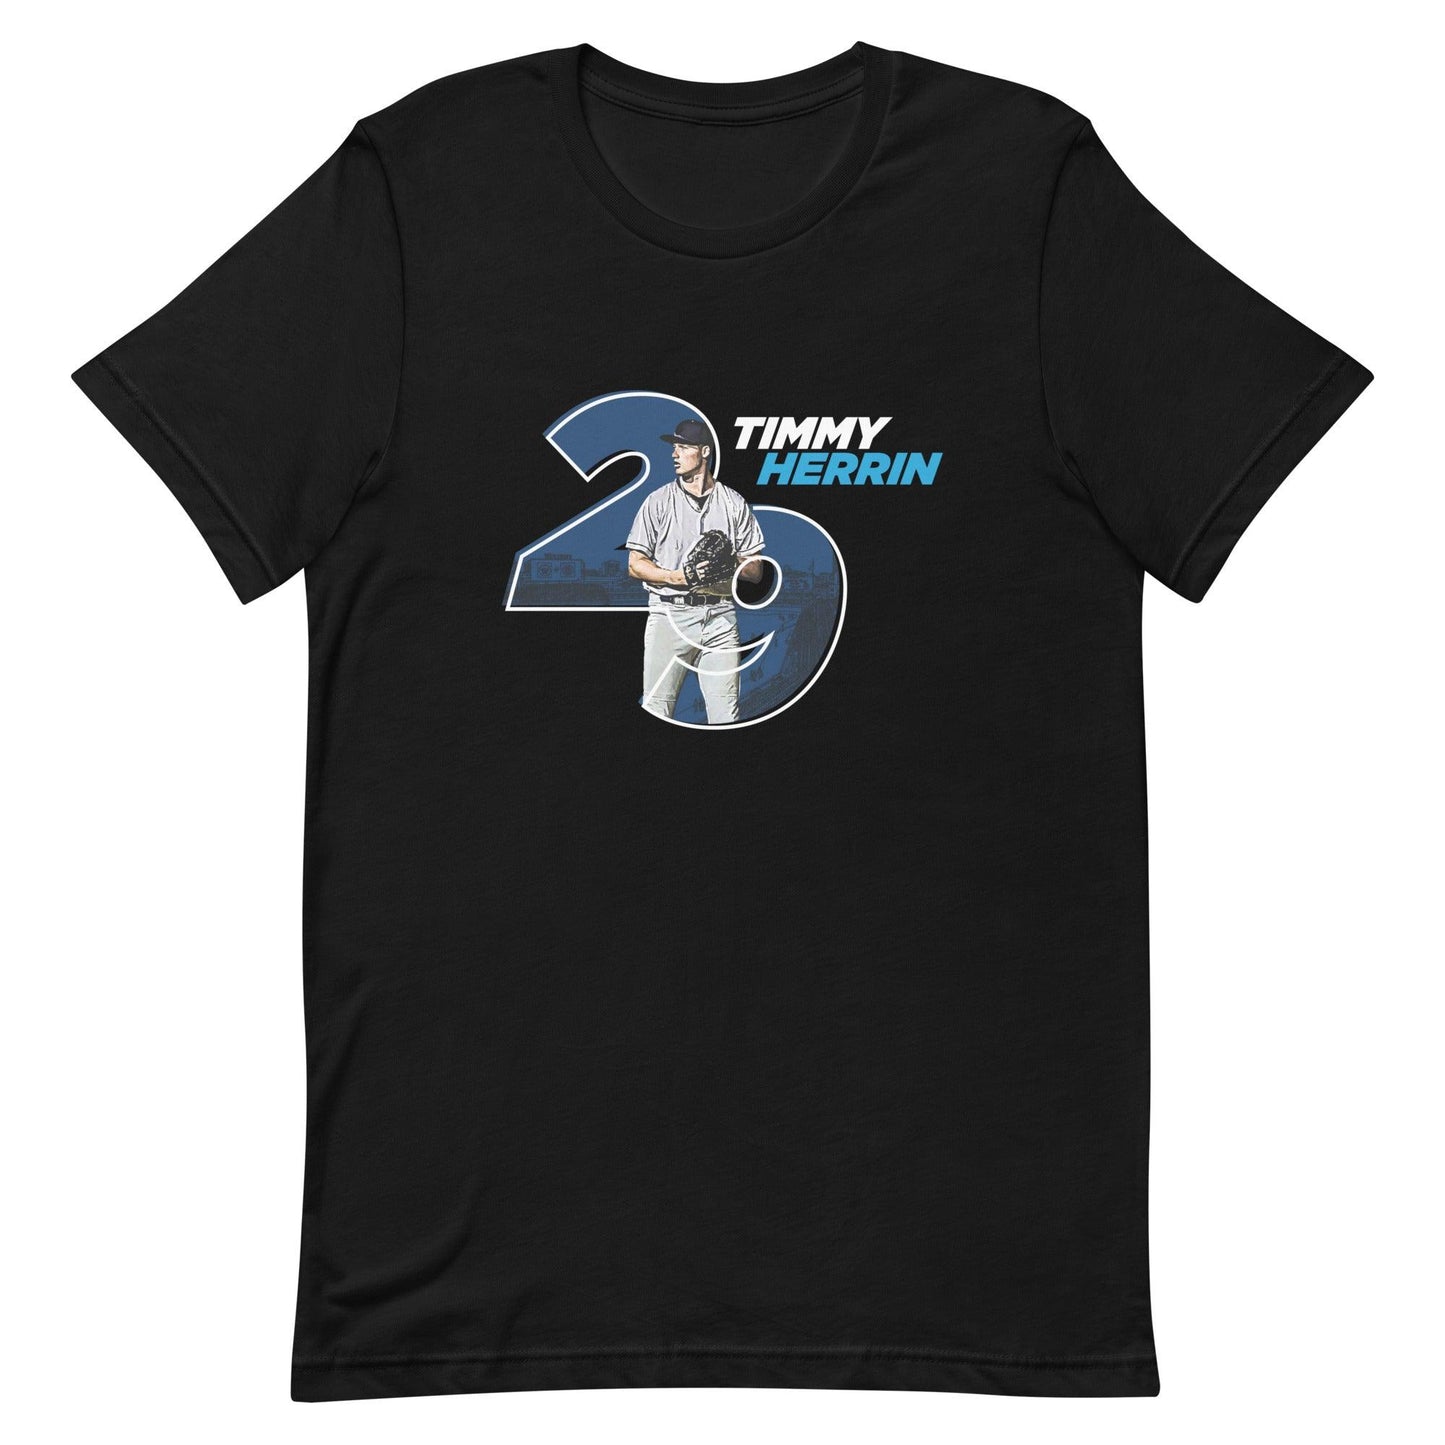 Timmy Herrin "Gameday" t-shirt - Fan Arch